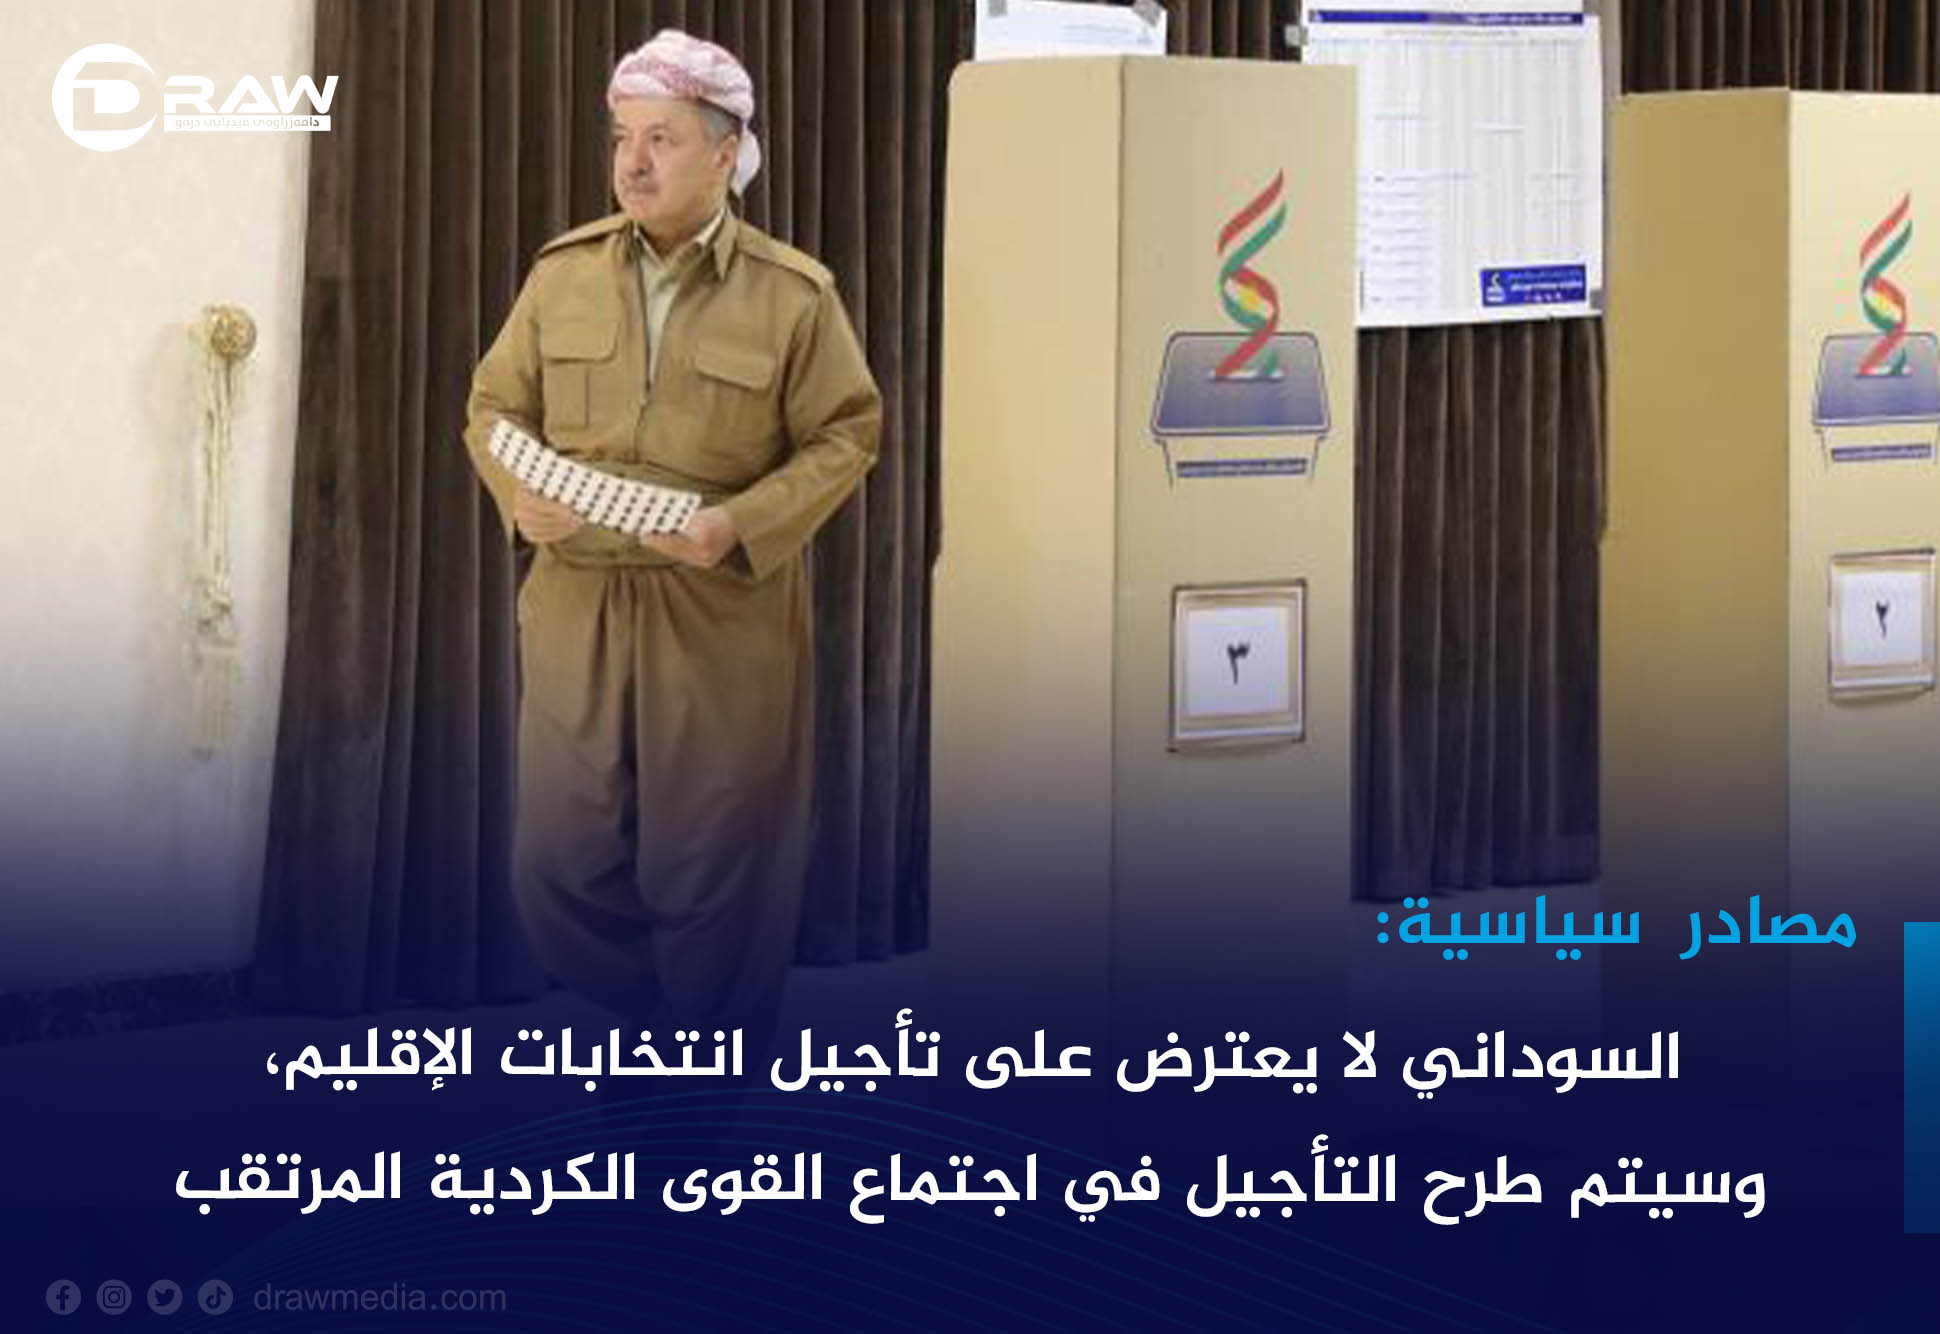 DrawMedia.net / مصادر سياسية: السوداني لا يعترض على تأجيل انتخابات الإقليم، وسيتم طرح التأجيل في اجتماع القوى الكردية المُرتقب